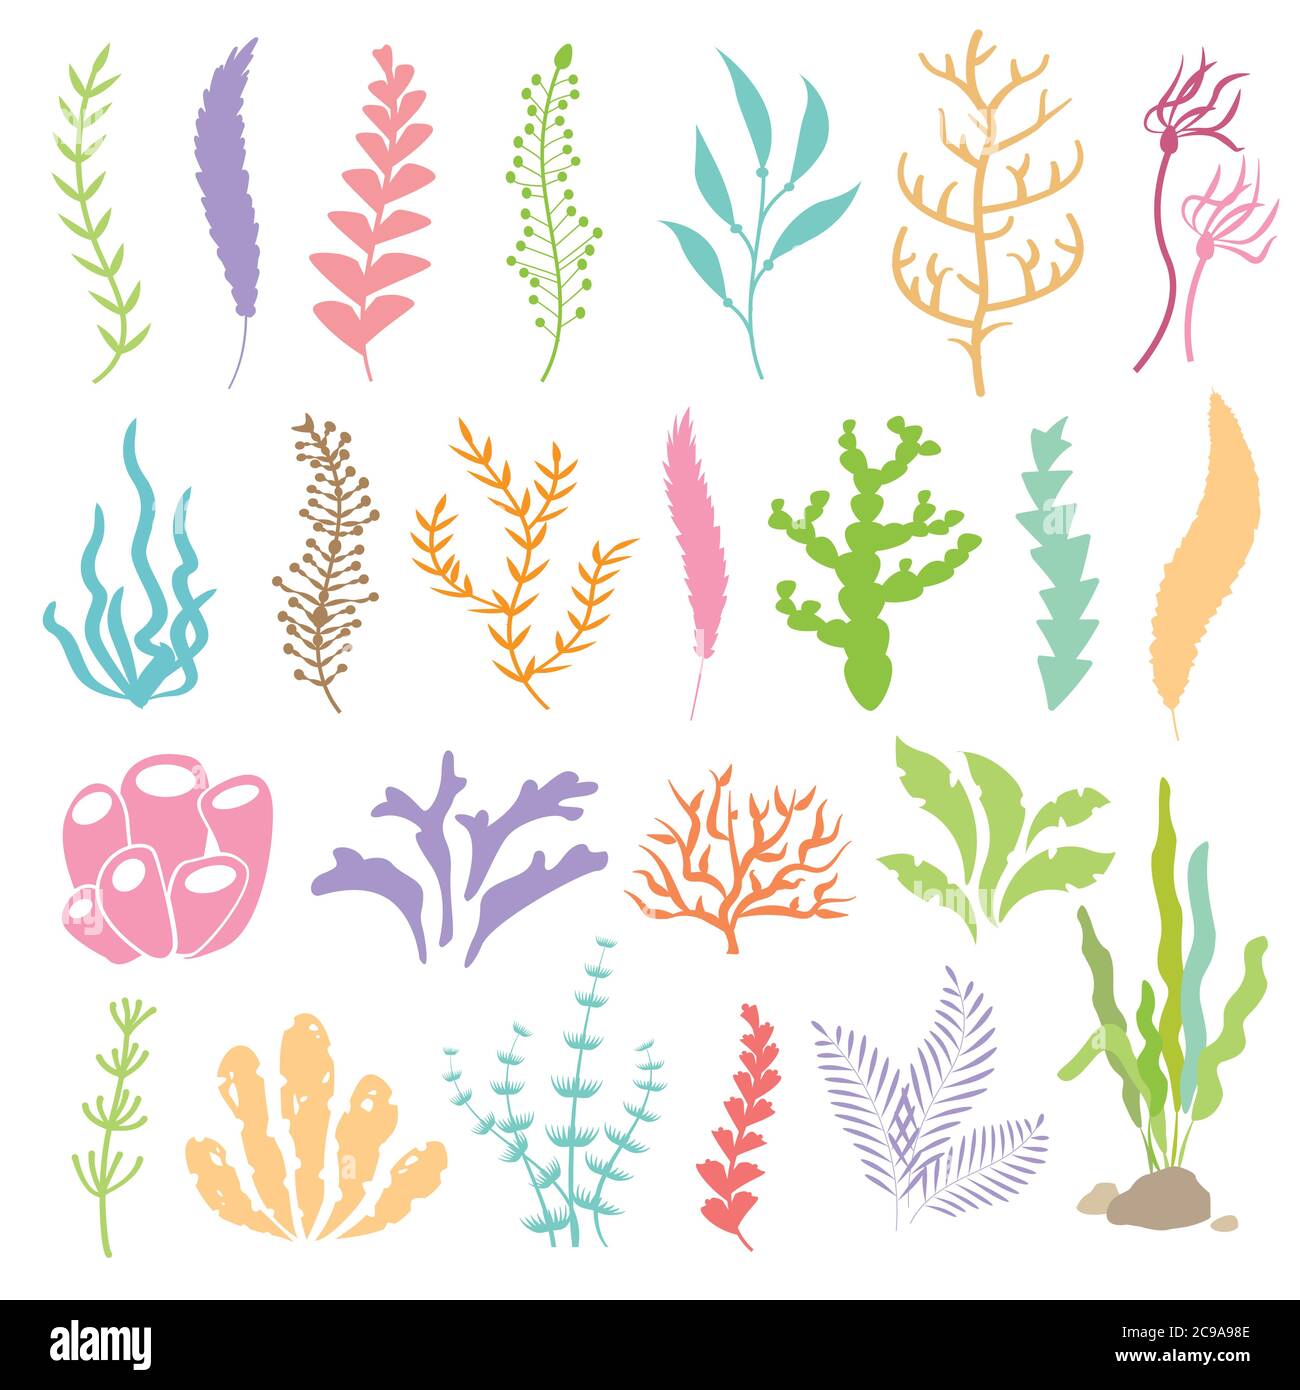 Meerespflanzen und aquatischen Meeresalgen-Algen-Set Vektor-Illustration.  Gelb und braun, rot und grün Aquarium Stock-Vektorgrafik - Alamy